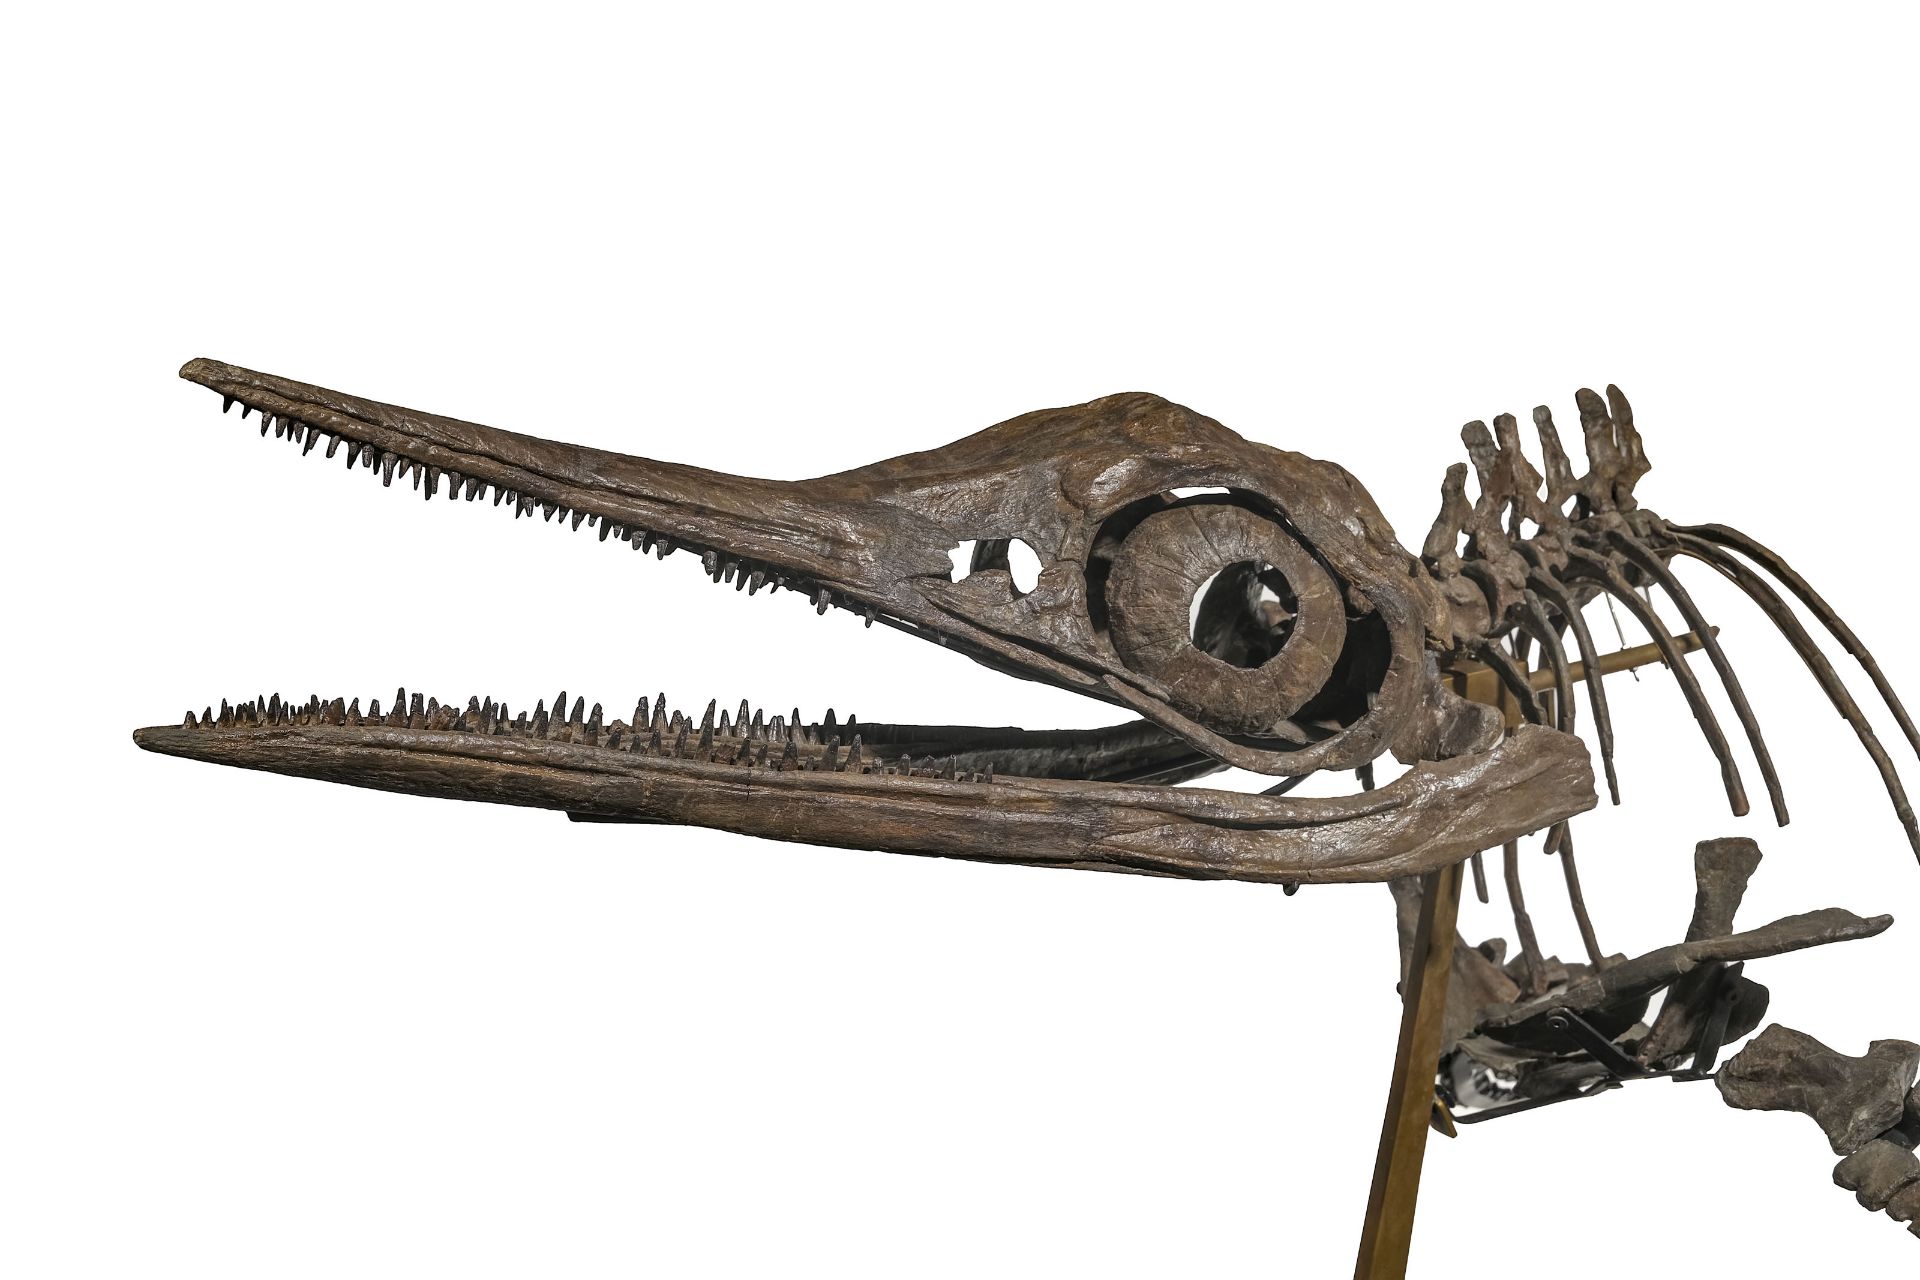 Squelette d'Ichtyosaurus Stenopterygius Quadriscissus, Allemagne, Jurassique (150 millions d'années) - Image 4 of 9